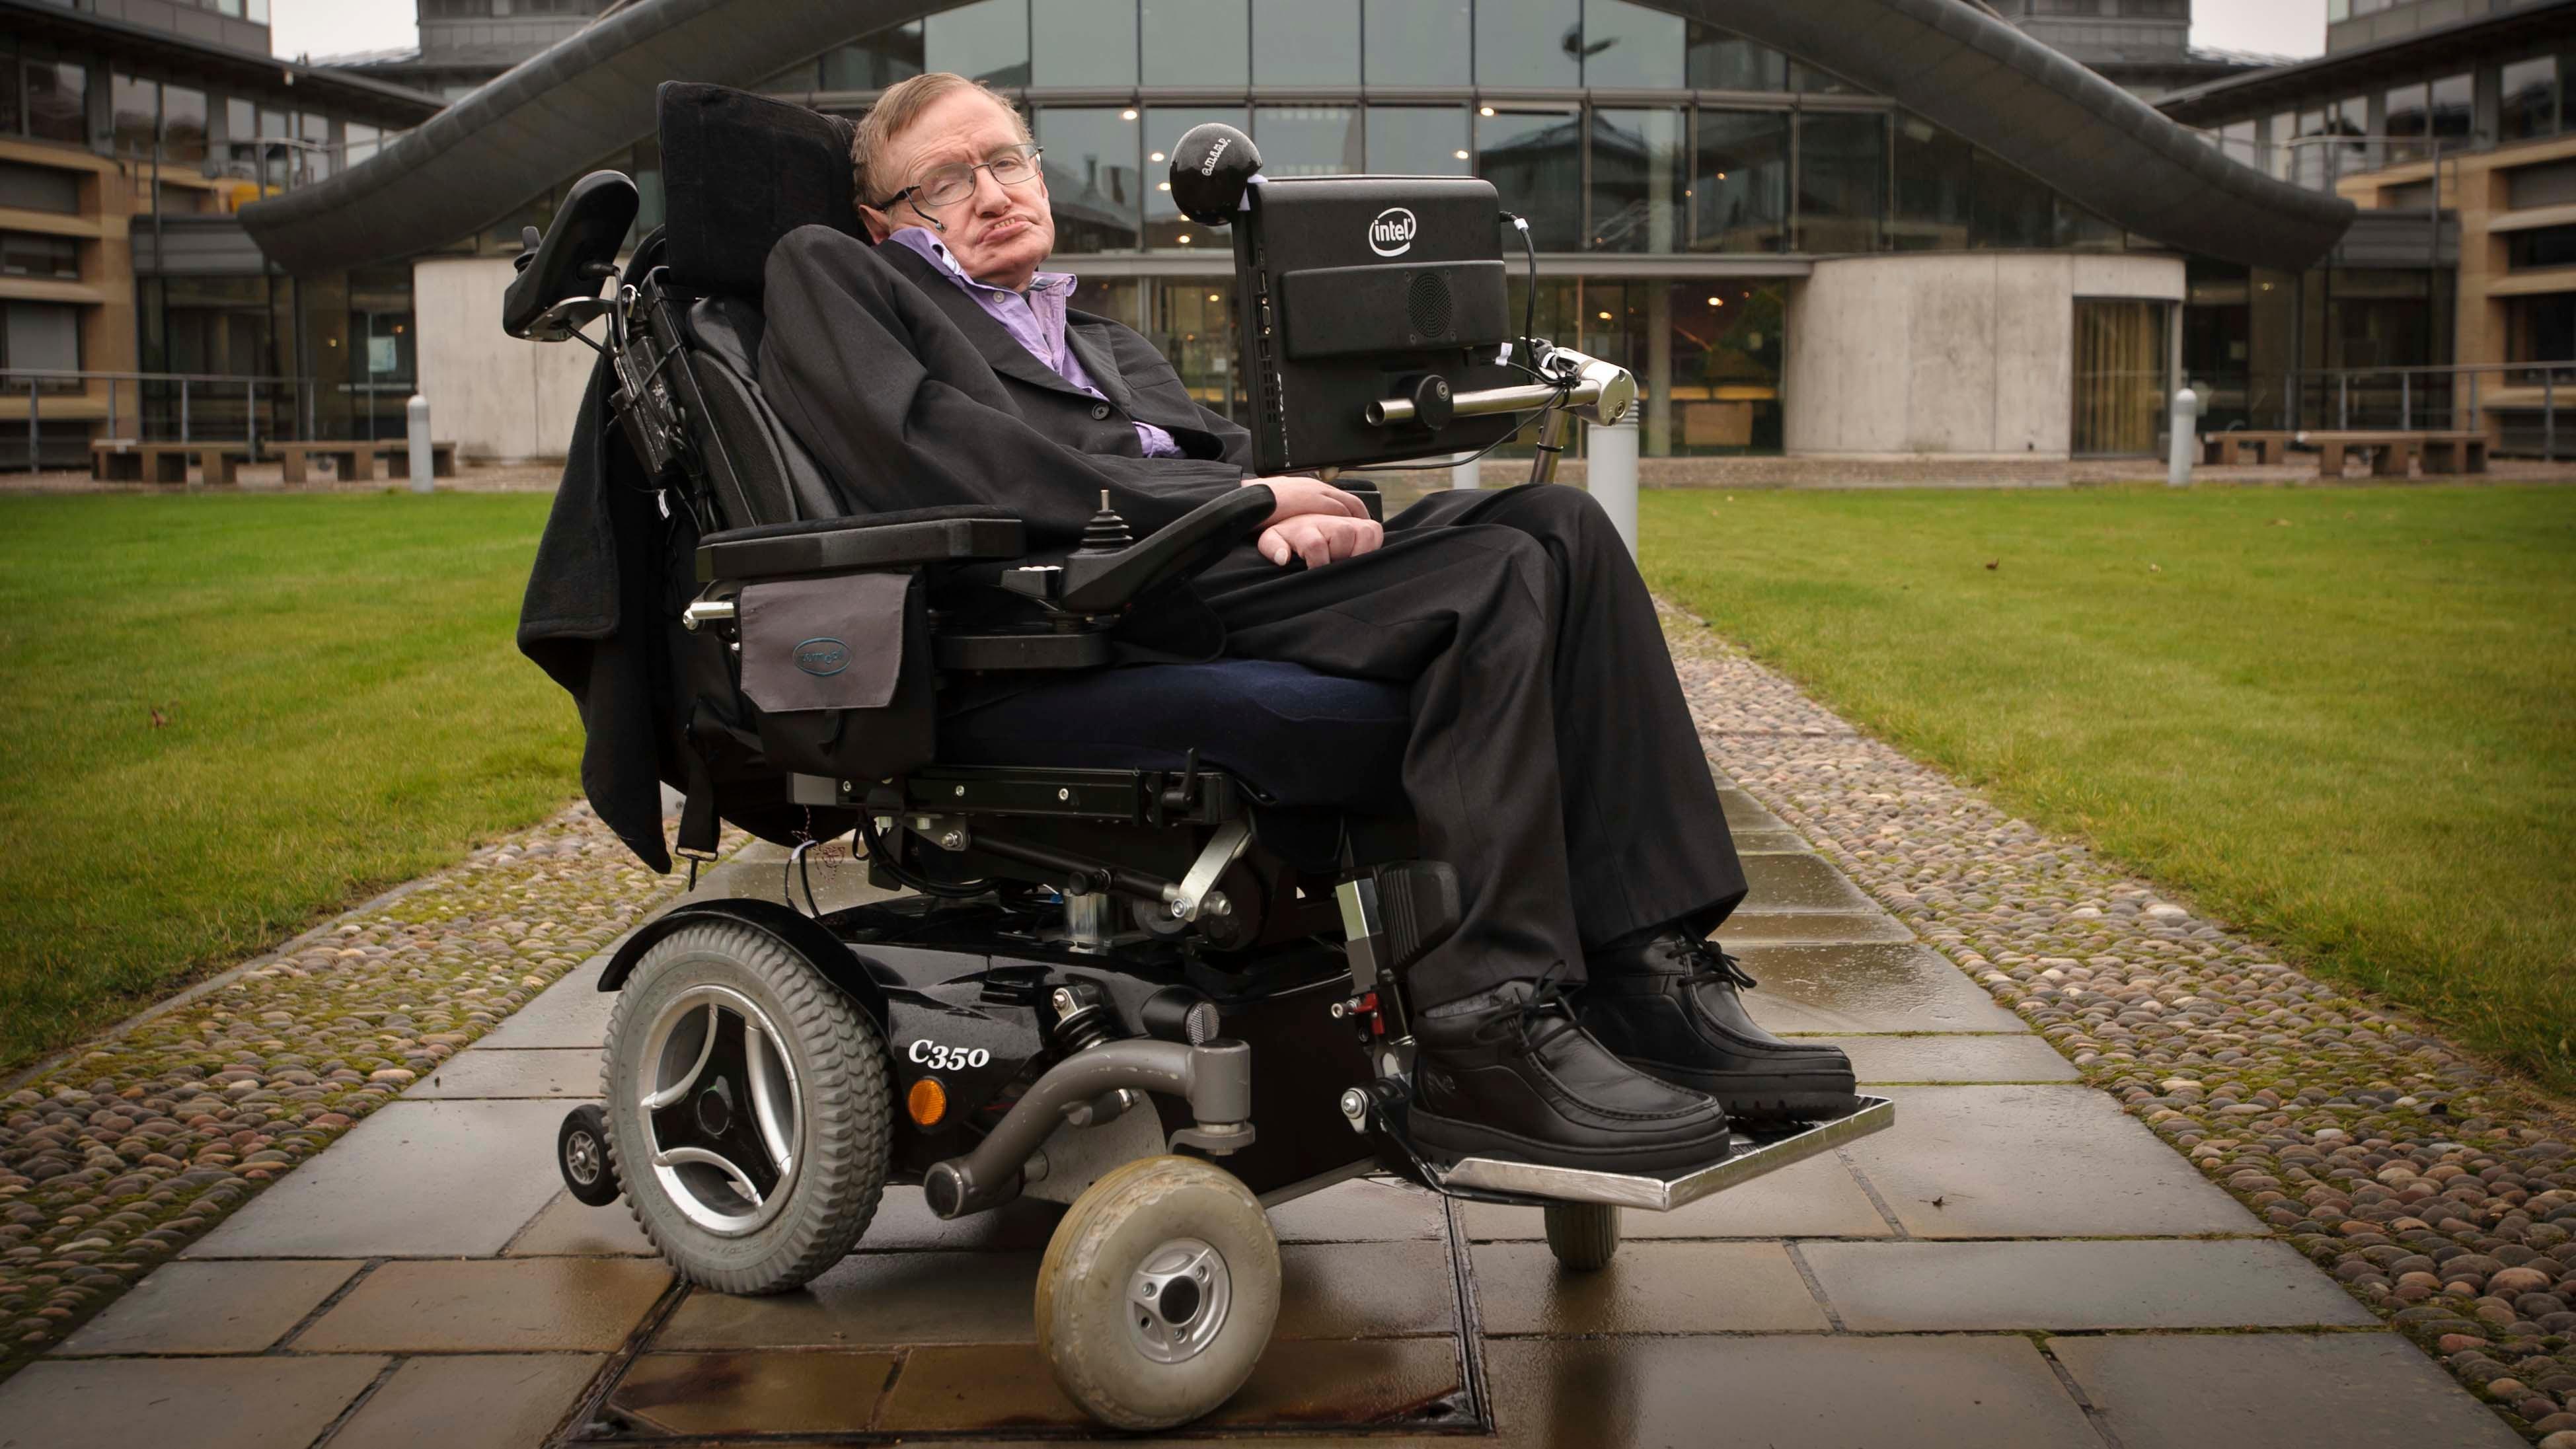 Hawking | PBS